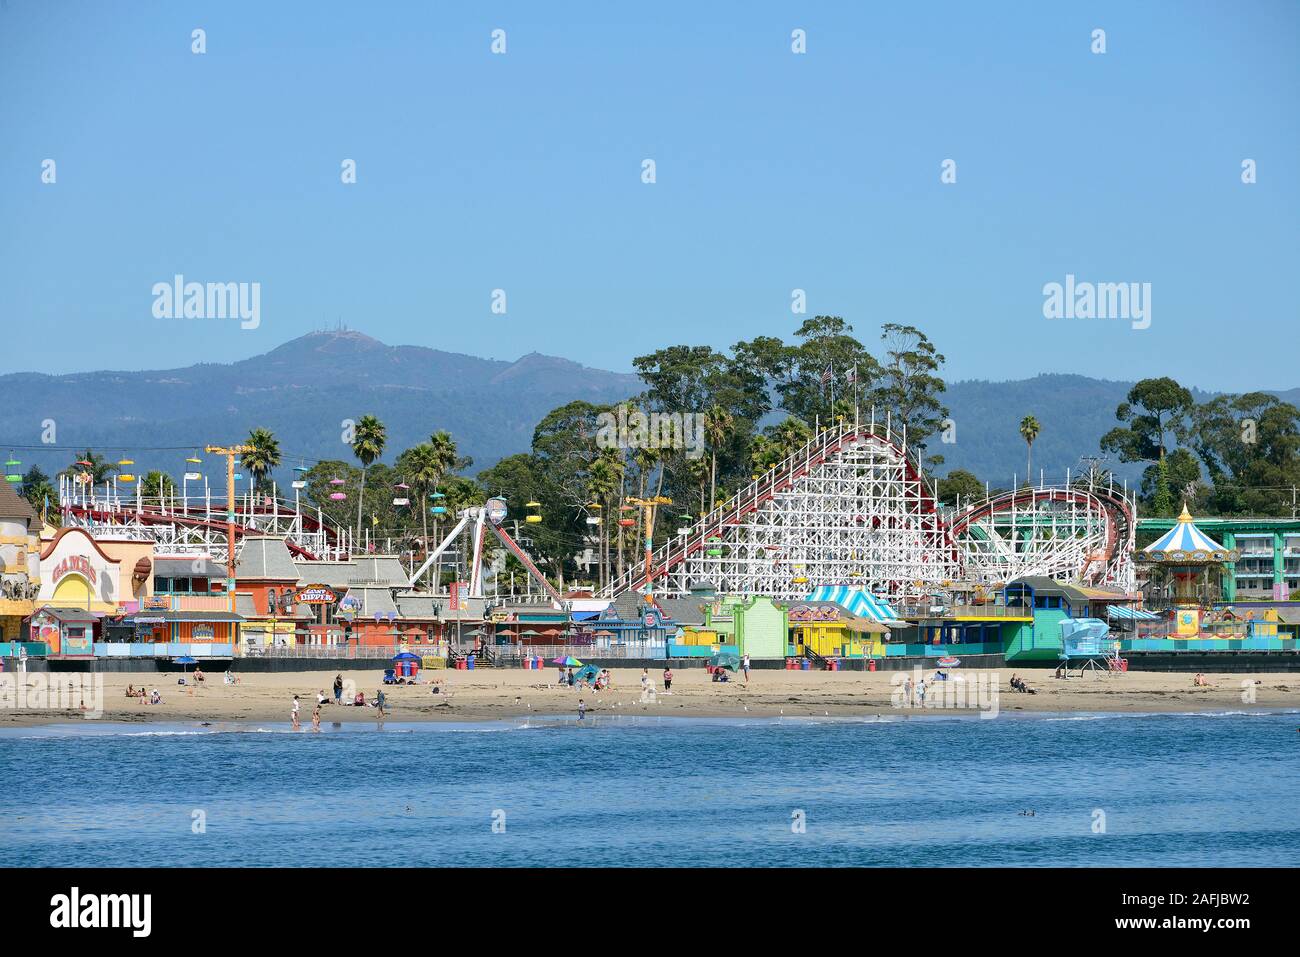 Parco divertimenti Santa Cruz Beach Boardwalk, parco divertimenti con numerosi giochi e giostre sulla spiaggia di Santa Cruz, California, Stati Uniti Foto Stock